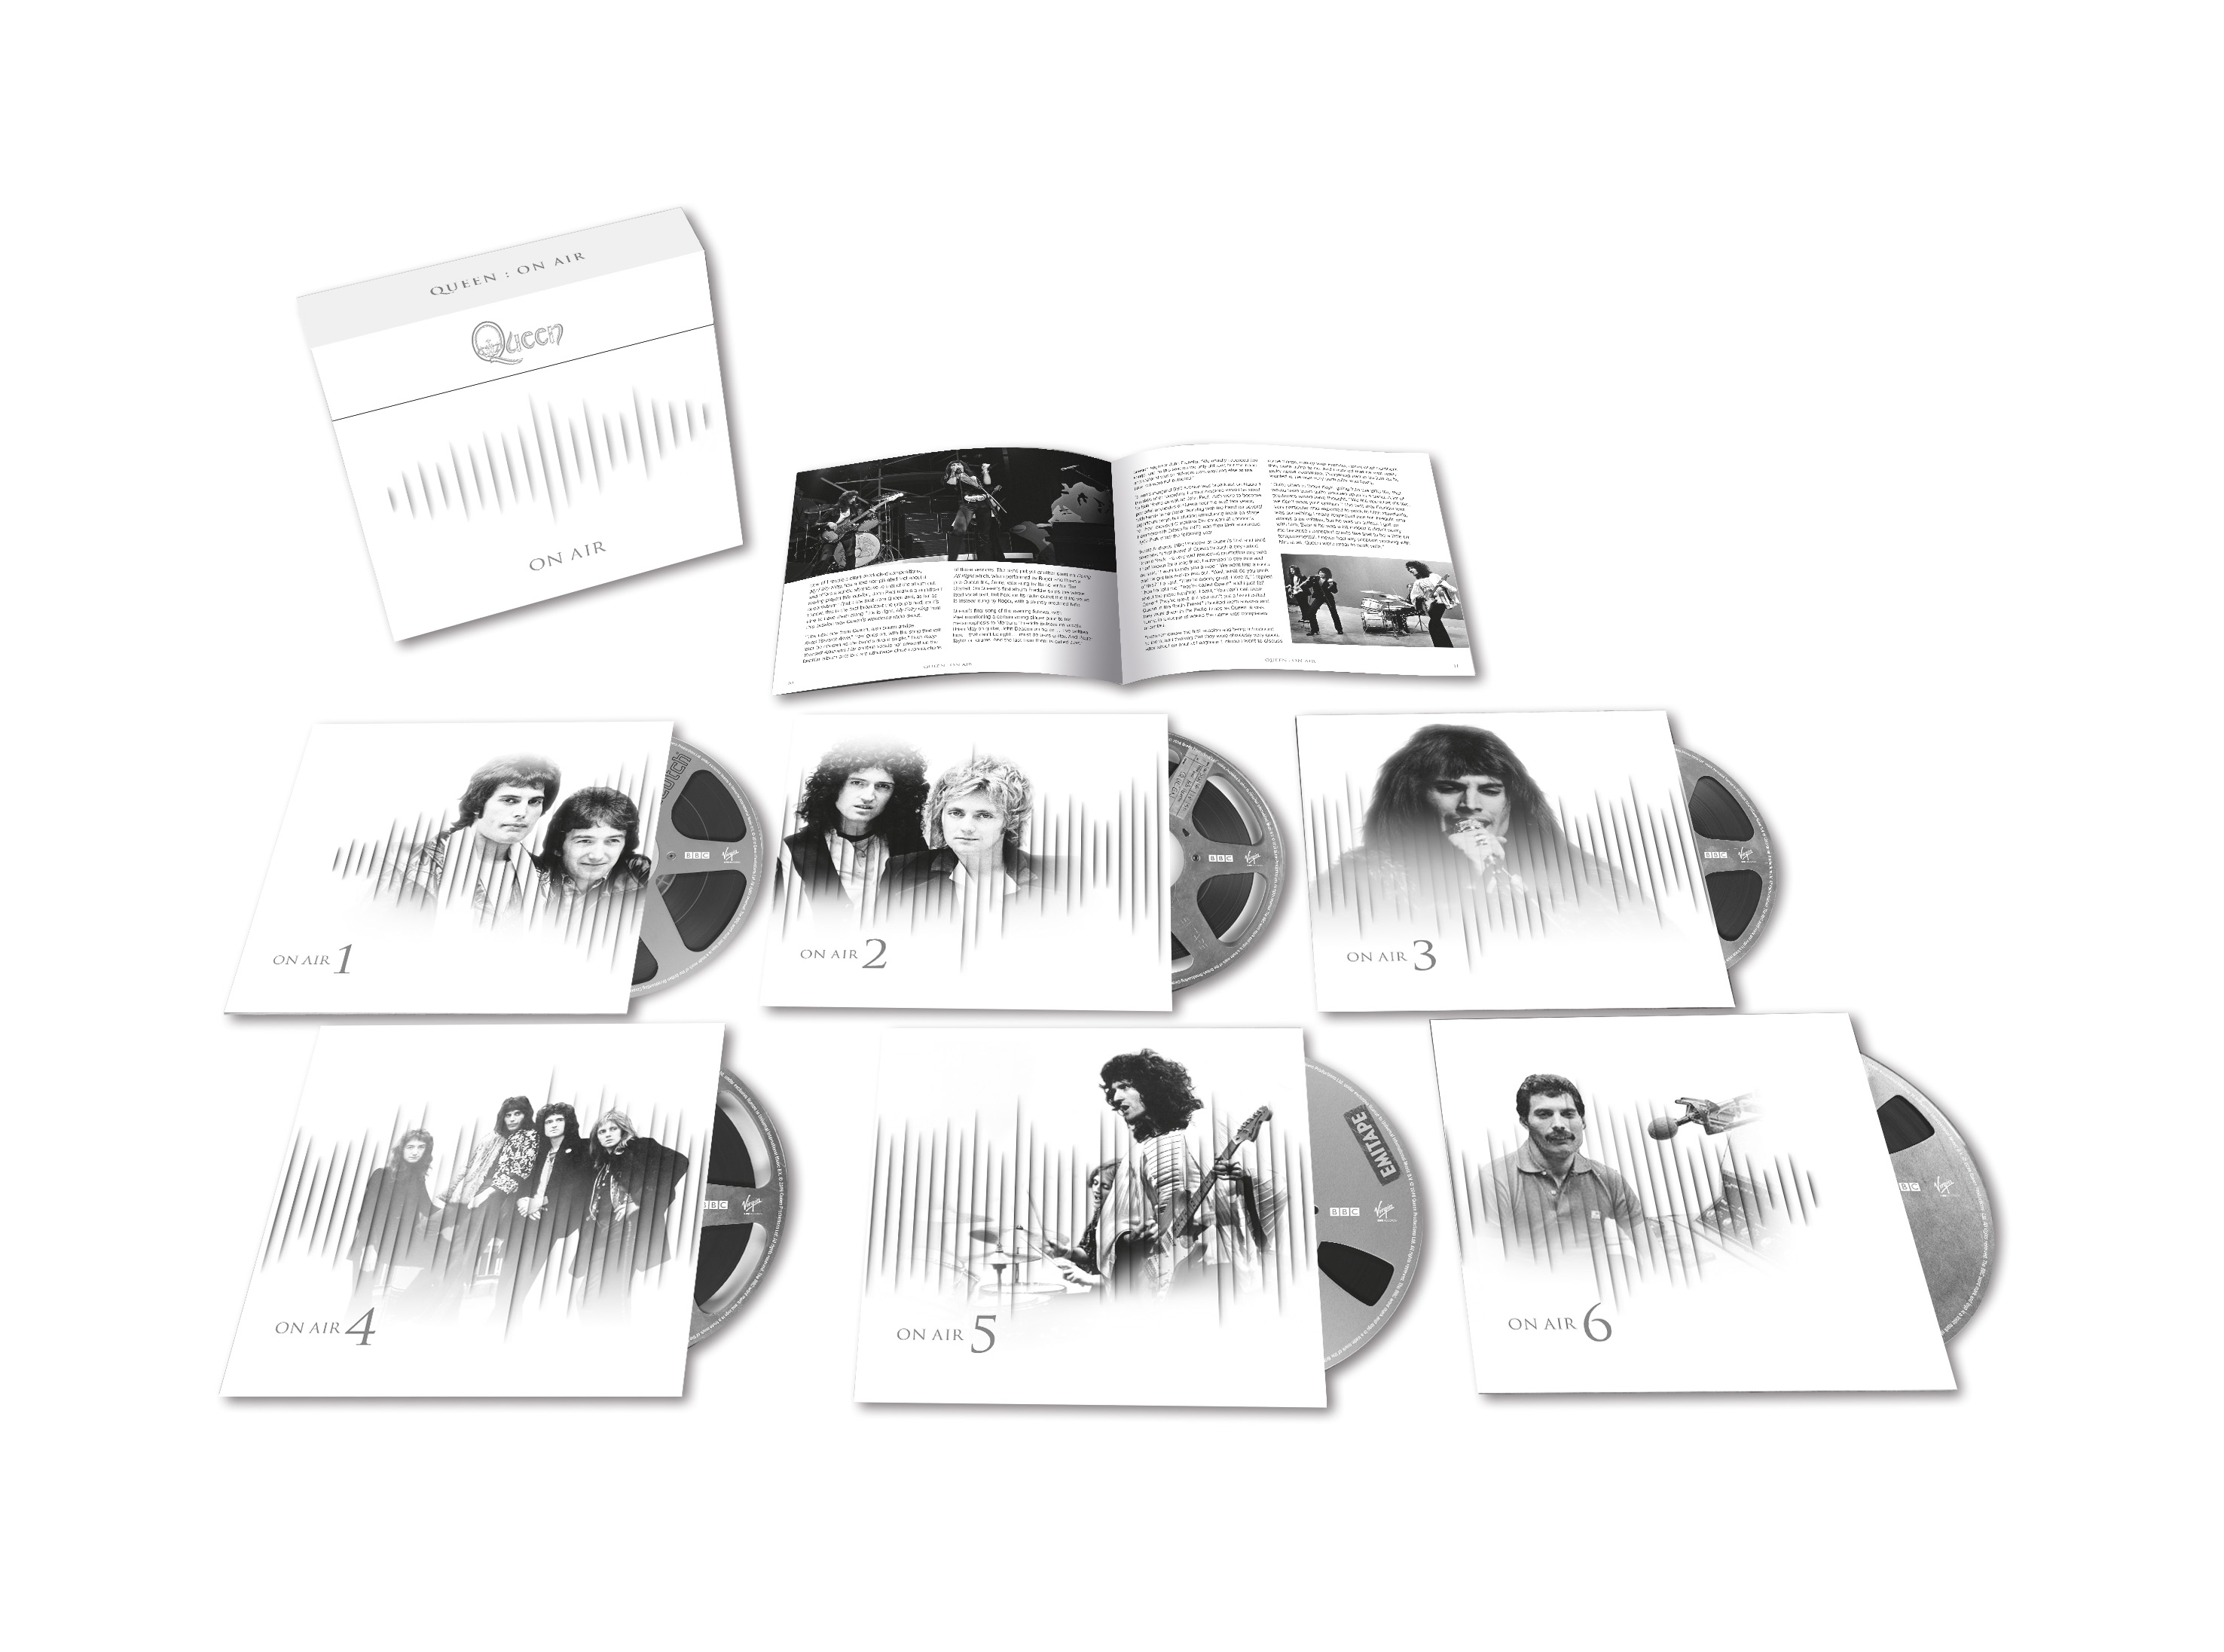 De 6 cd's tellende deluxe editie van Queen - On Air: The Complete BBC Radio Sessions.